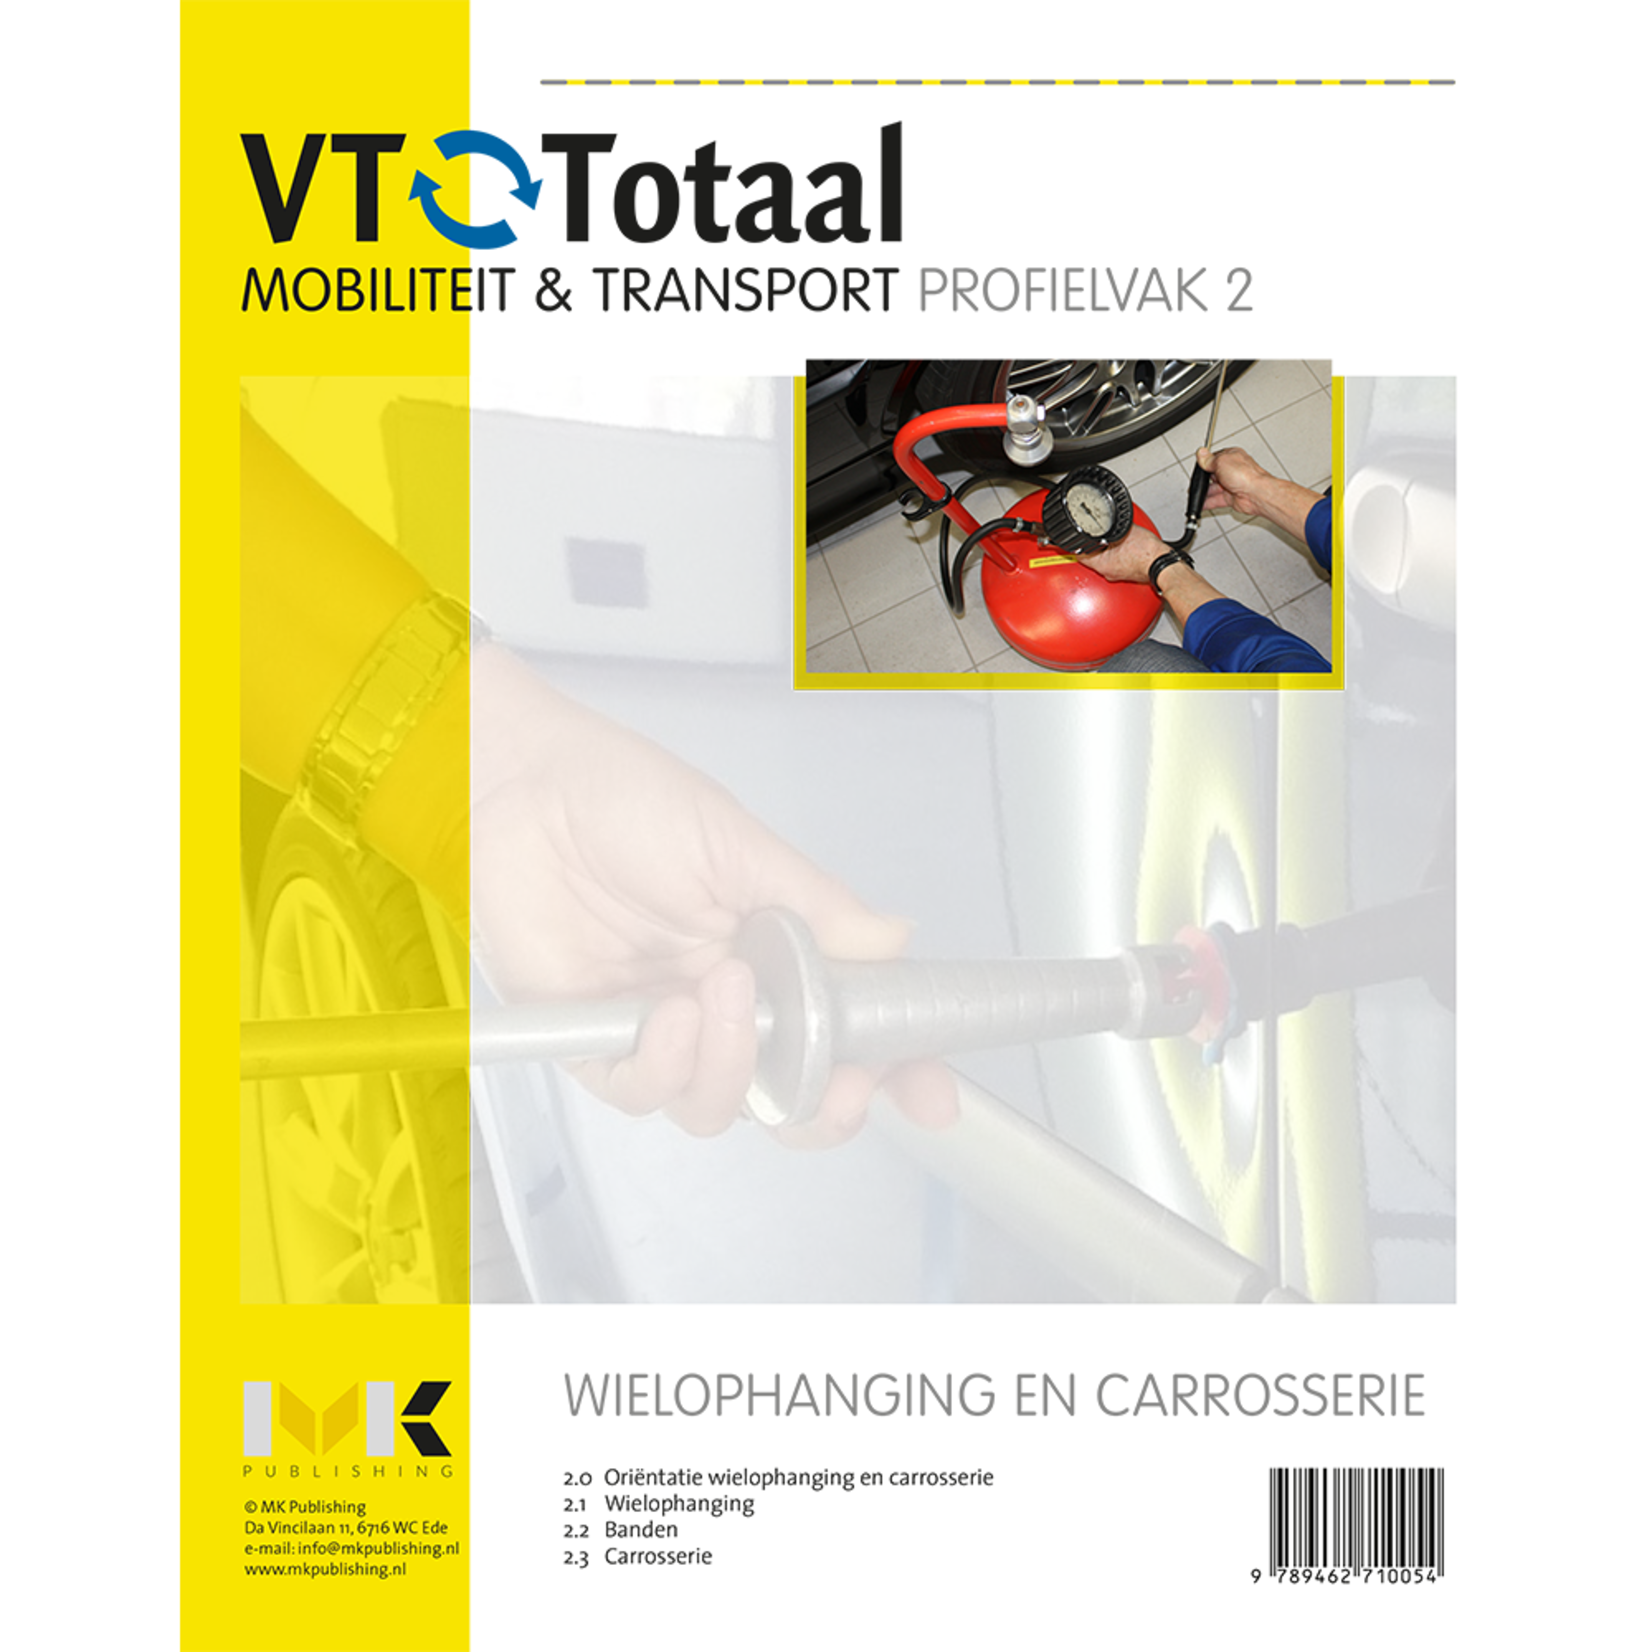 VT-Totaal M&T Profielvak 2 Wielophanging en carrosserie